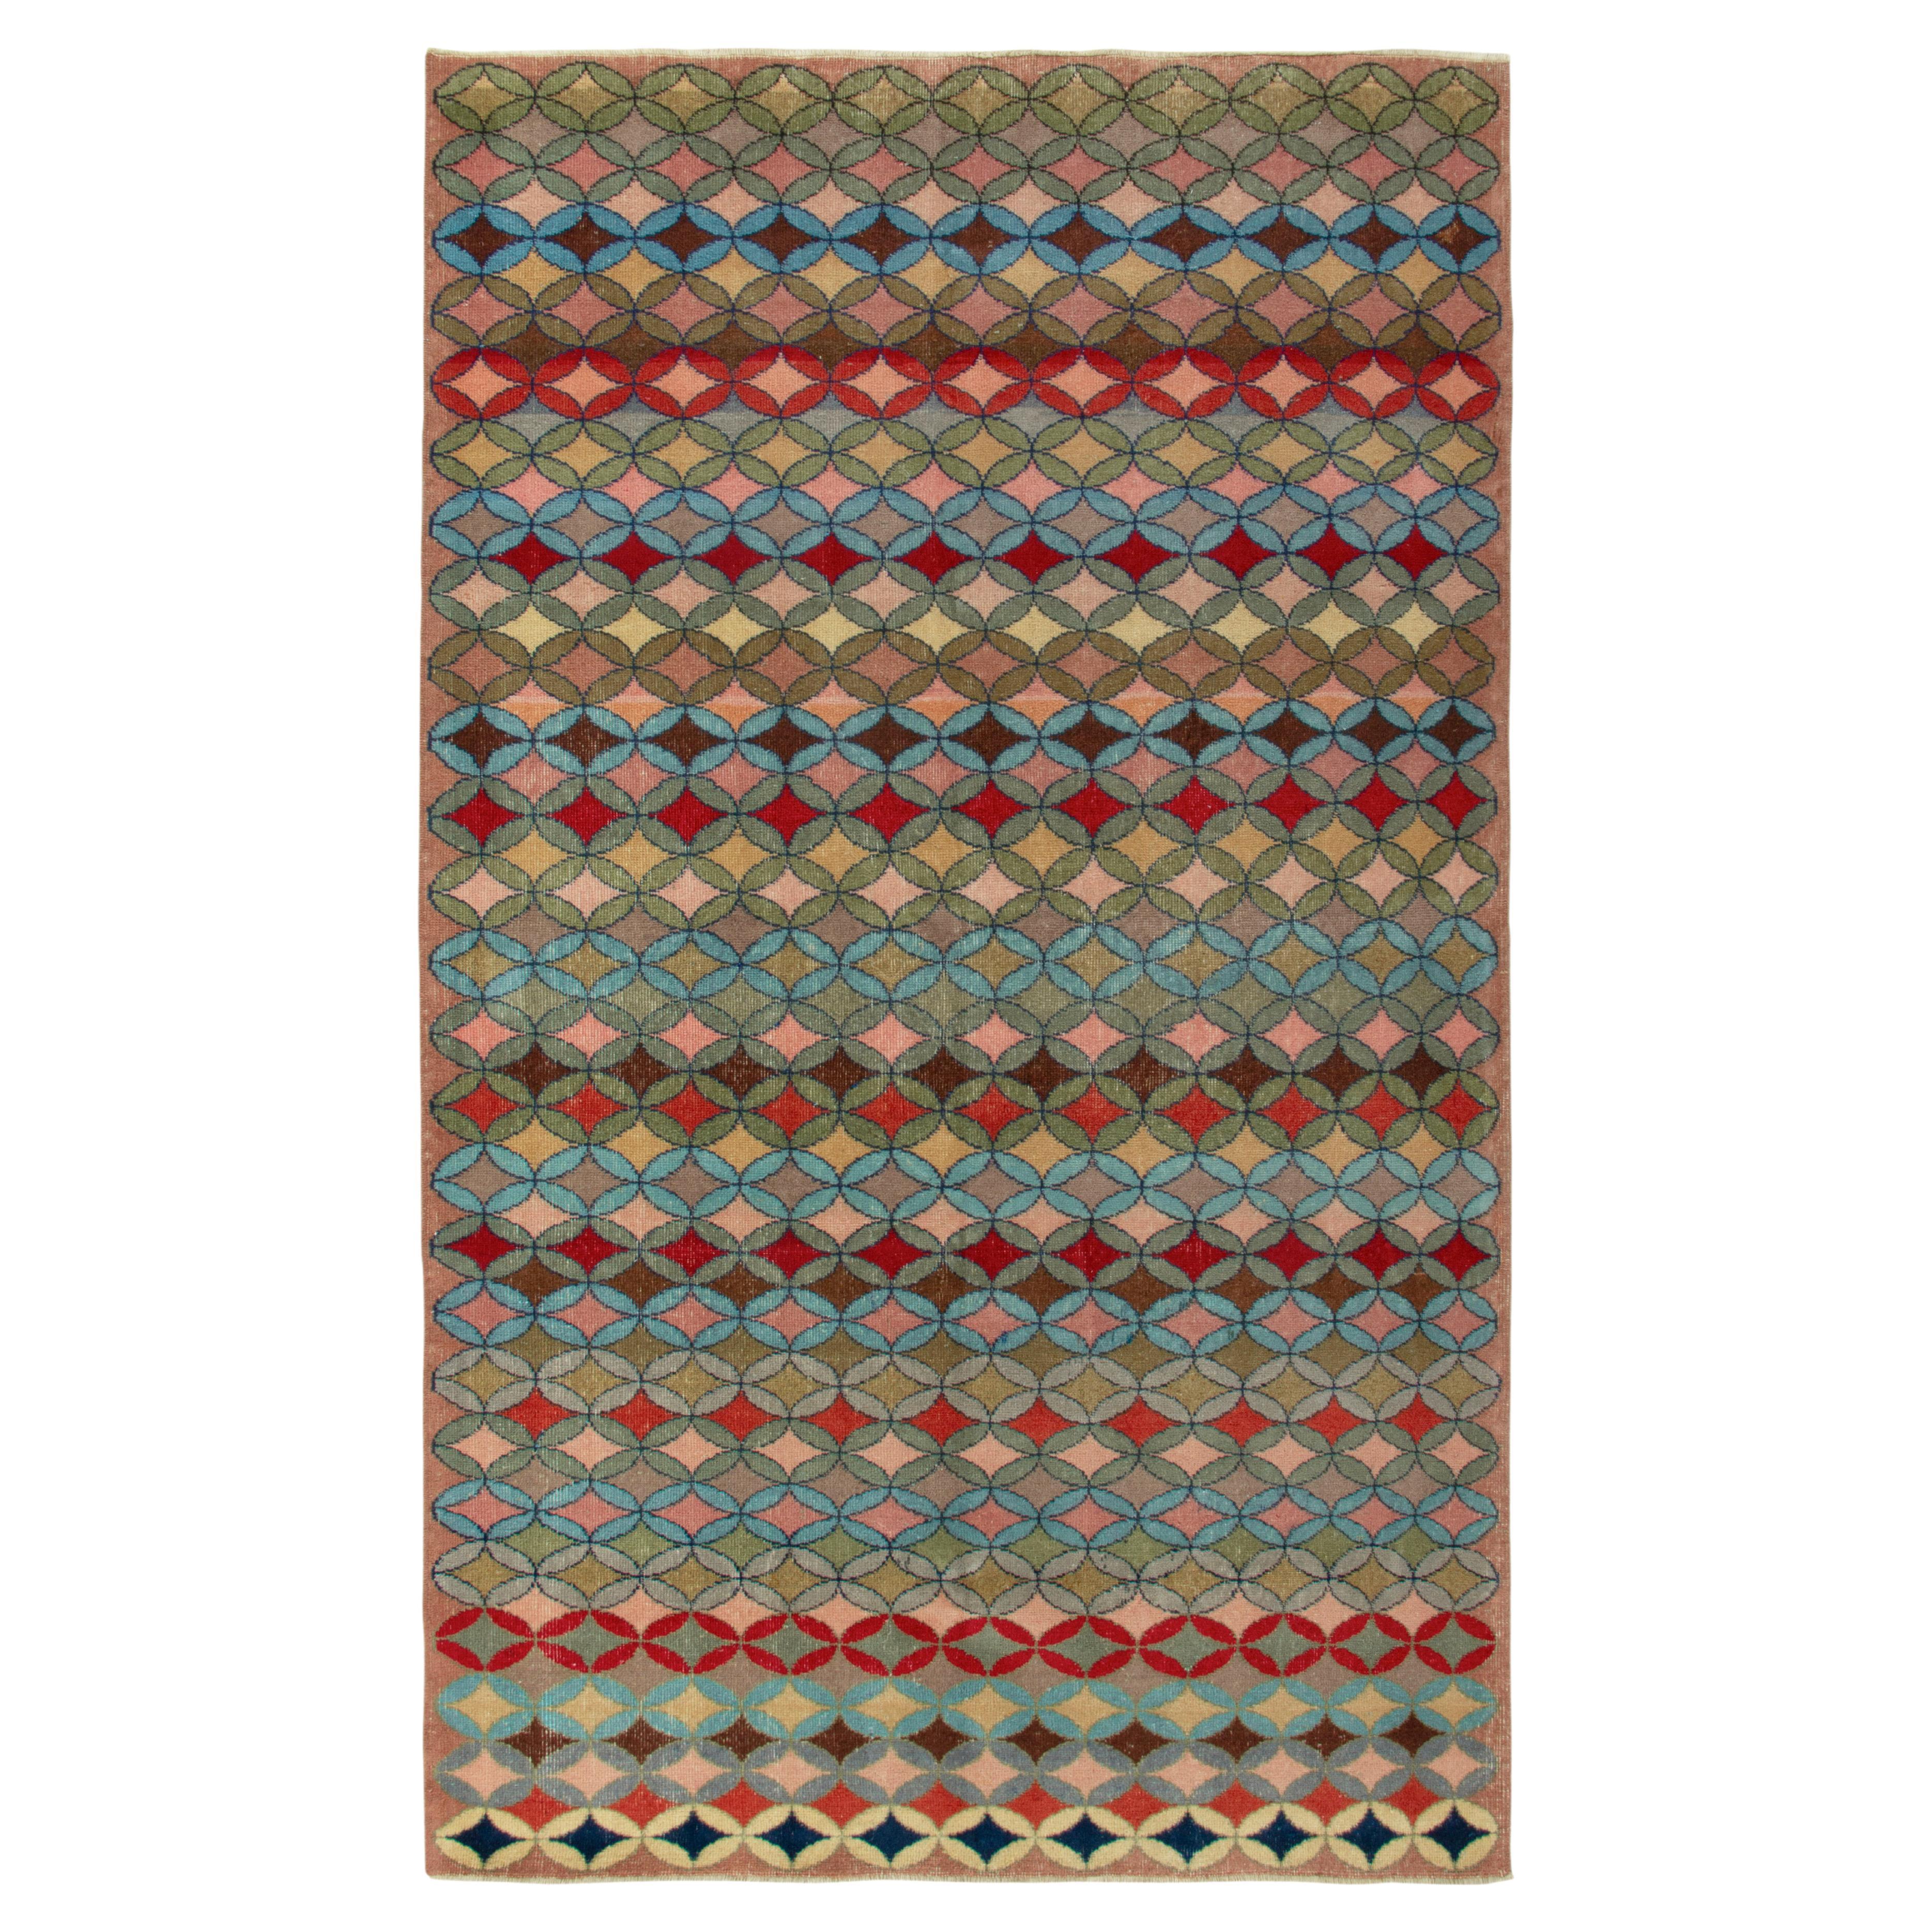 1960er Jahre Vintage Distressed Deco-Teppich in mehrfarbigem geometrischem Muster von Teppich & Kelim